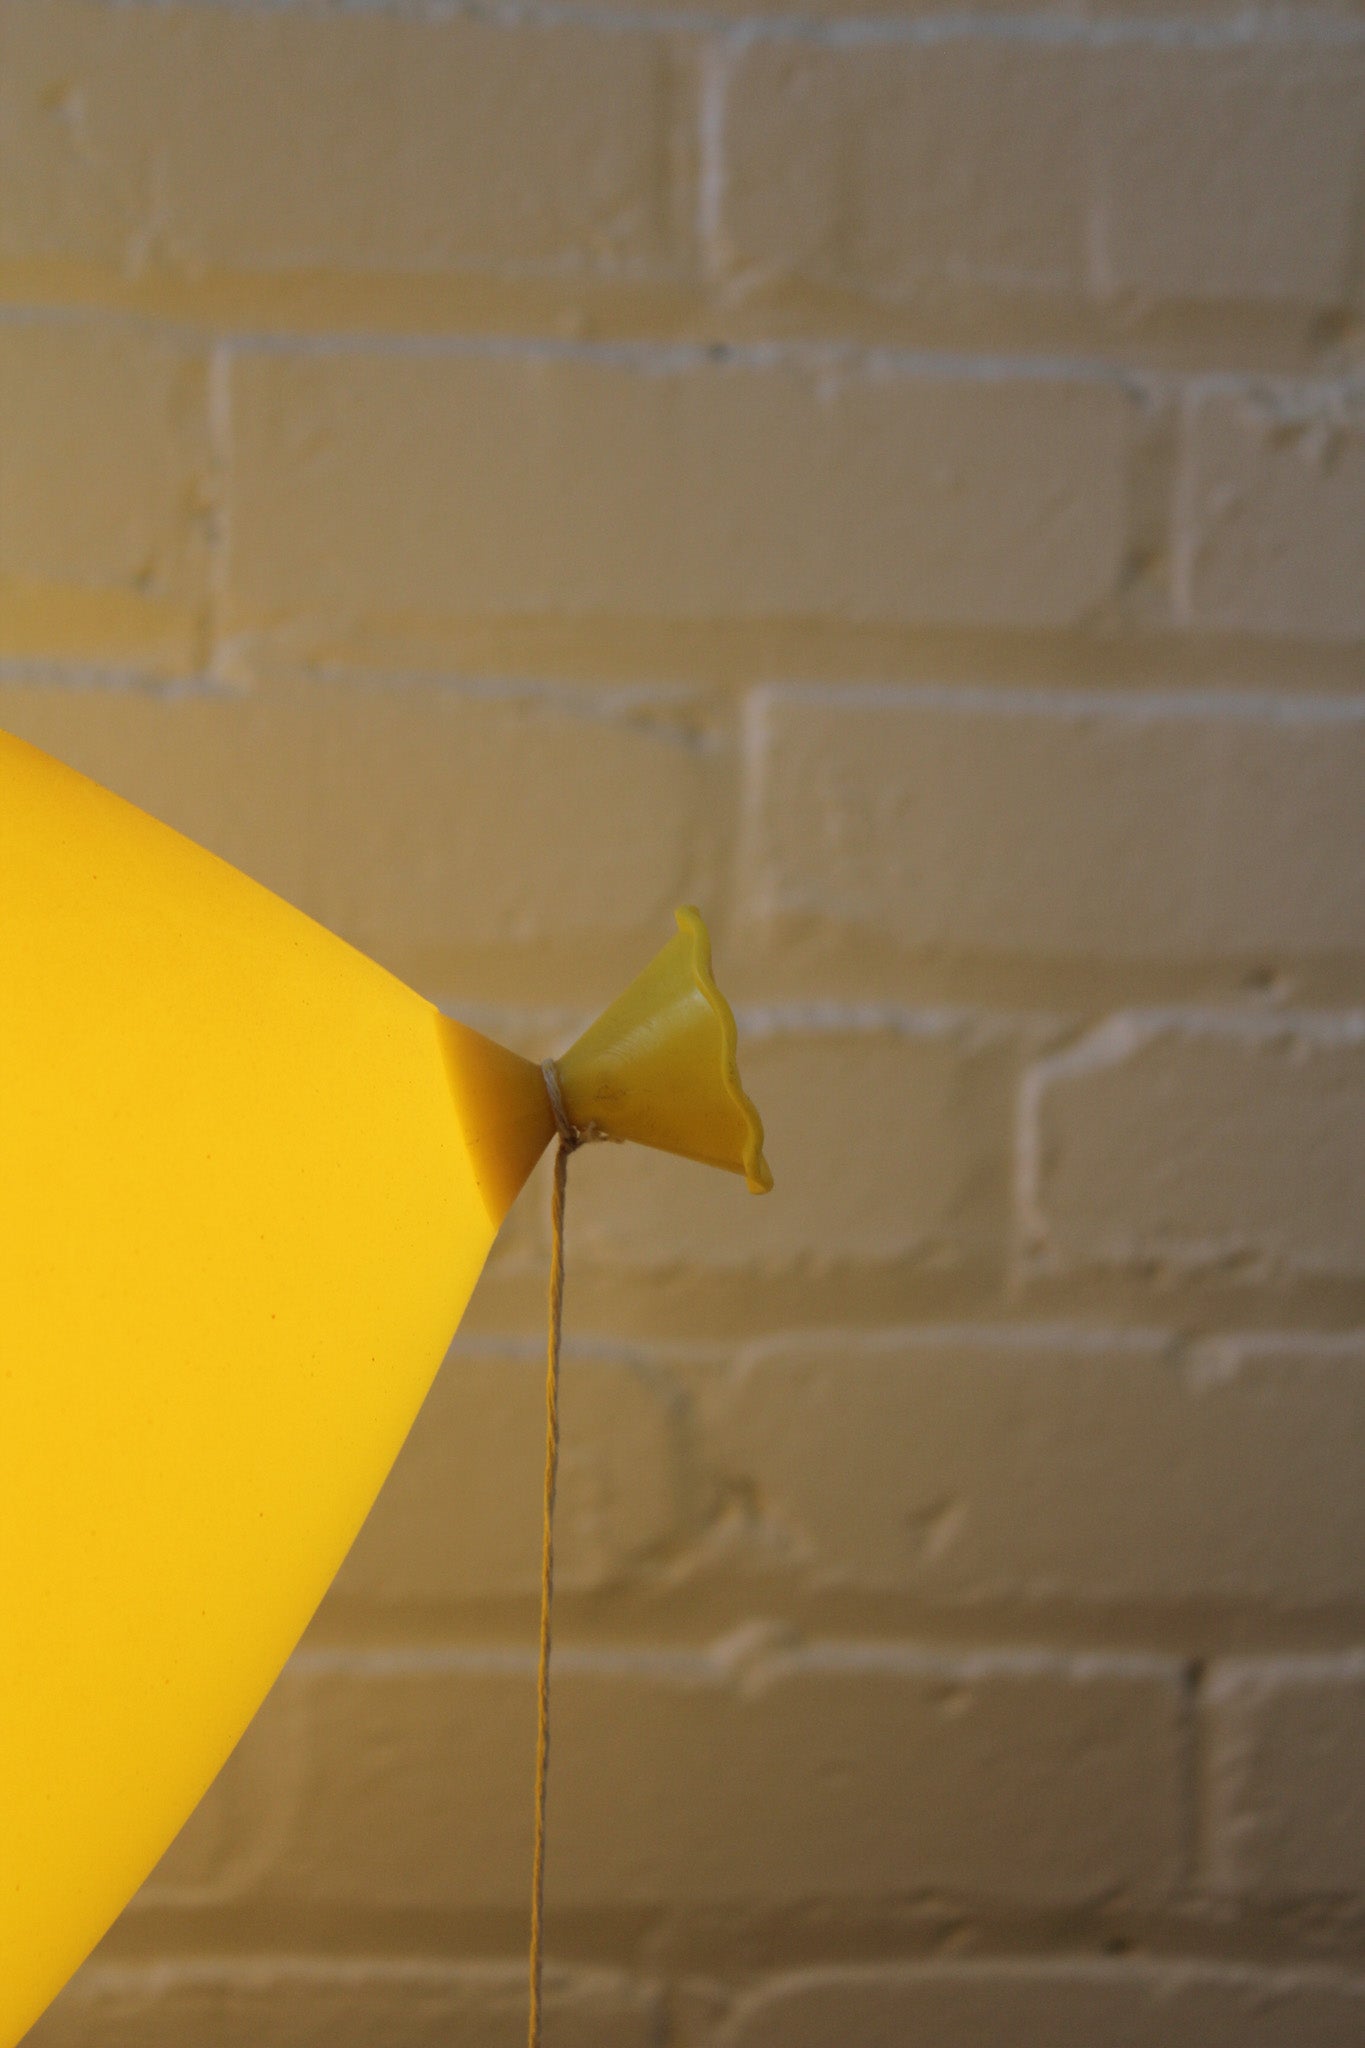 Balloon Lamp by Yves Christin for Bilumen